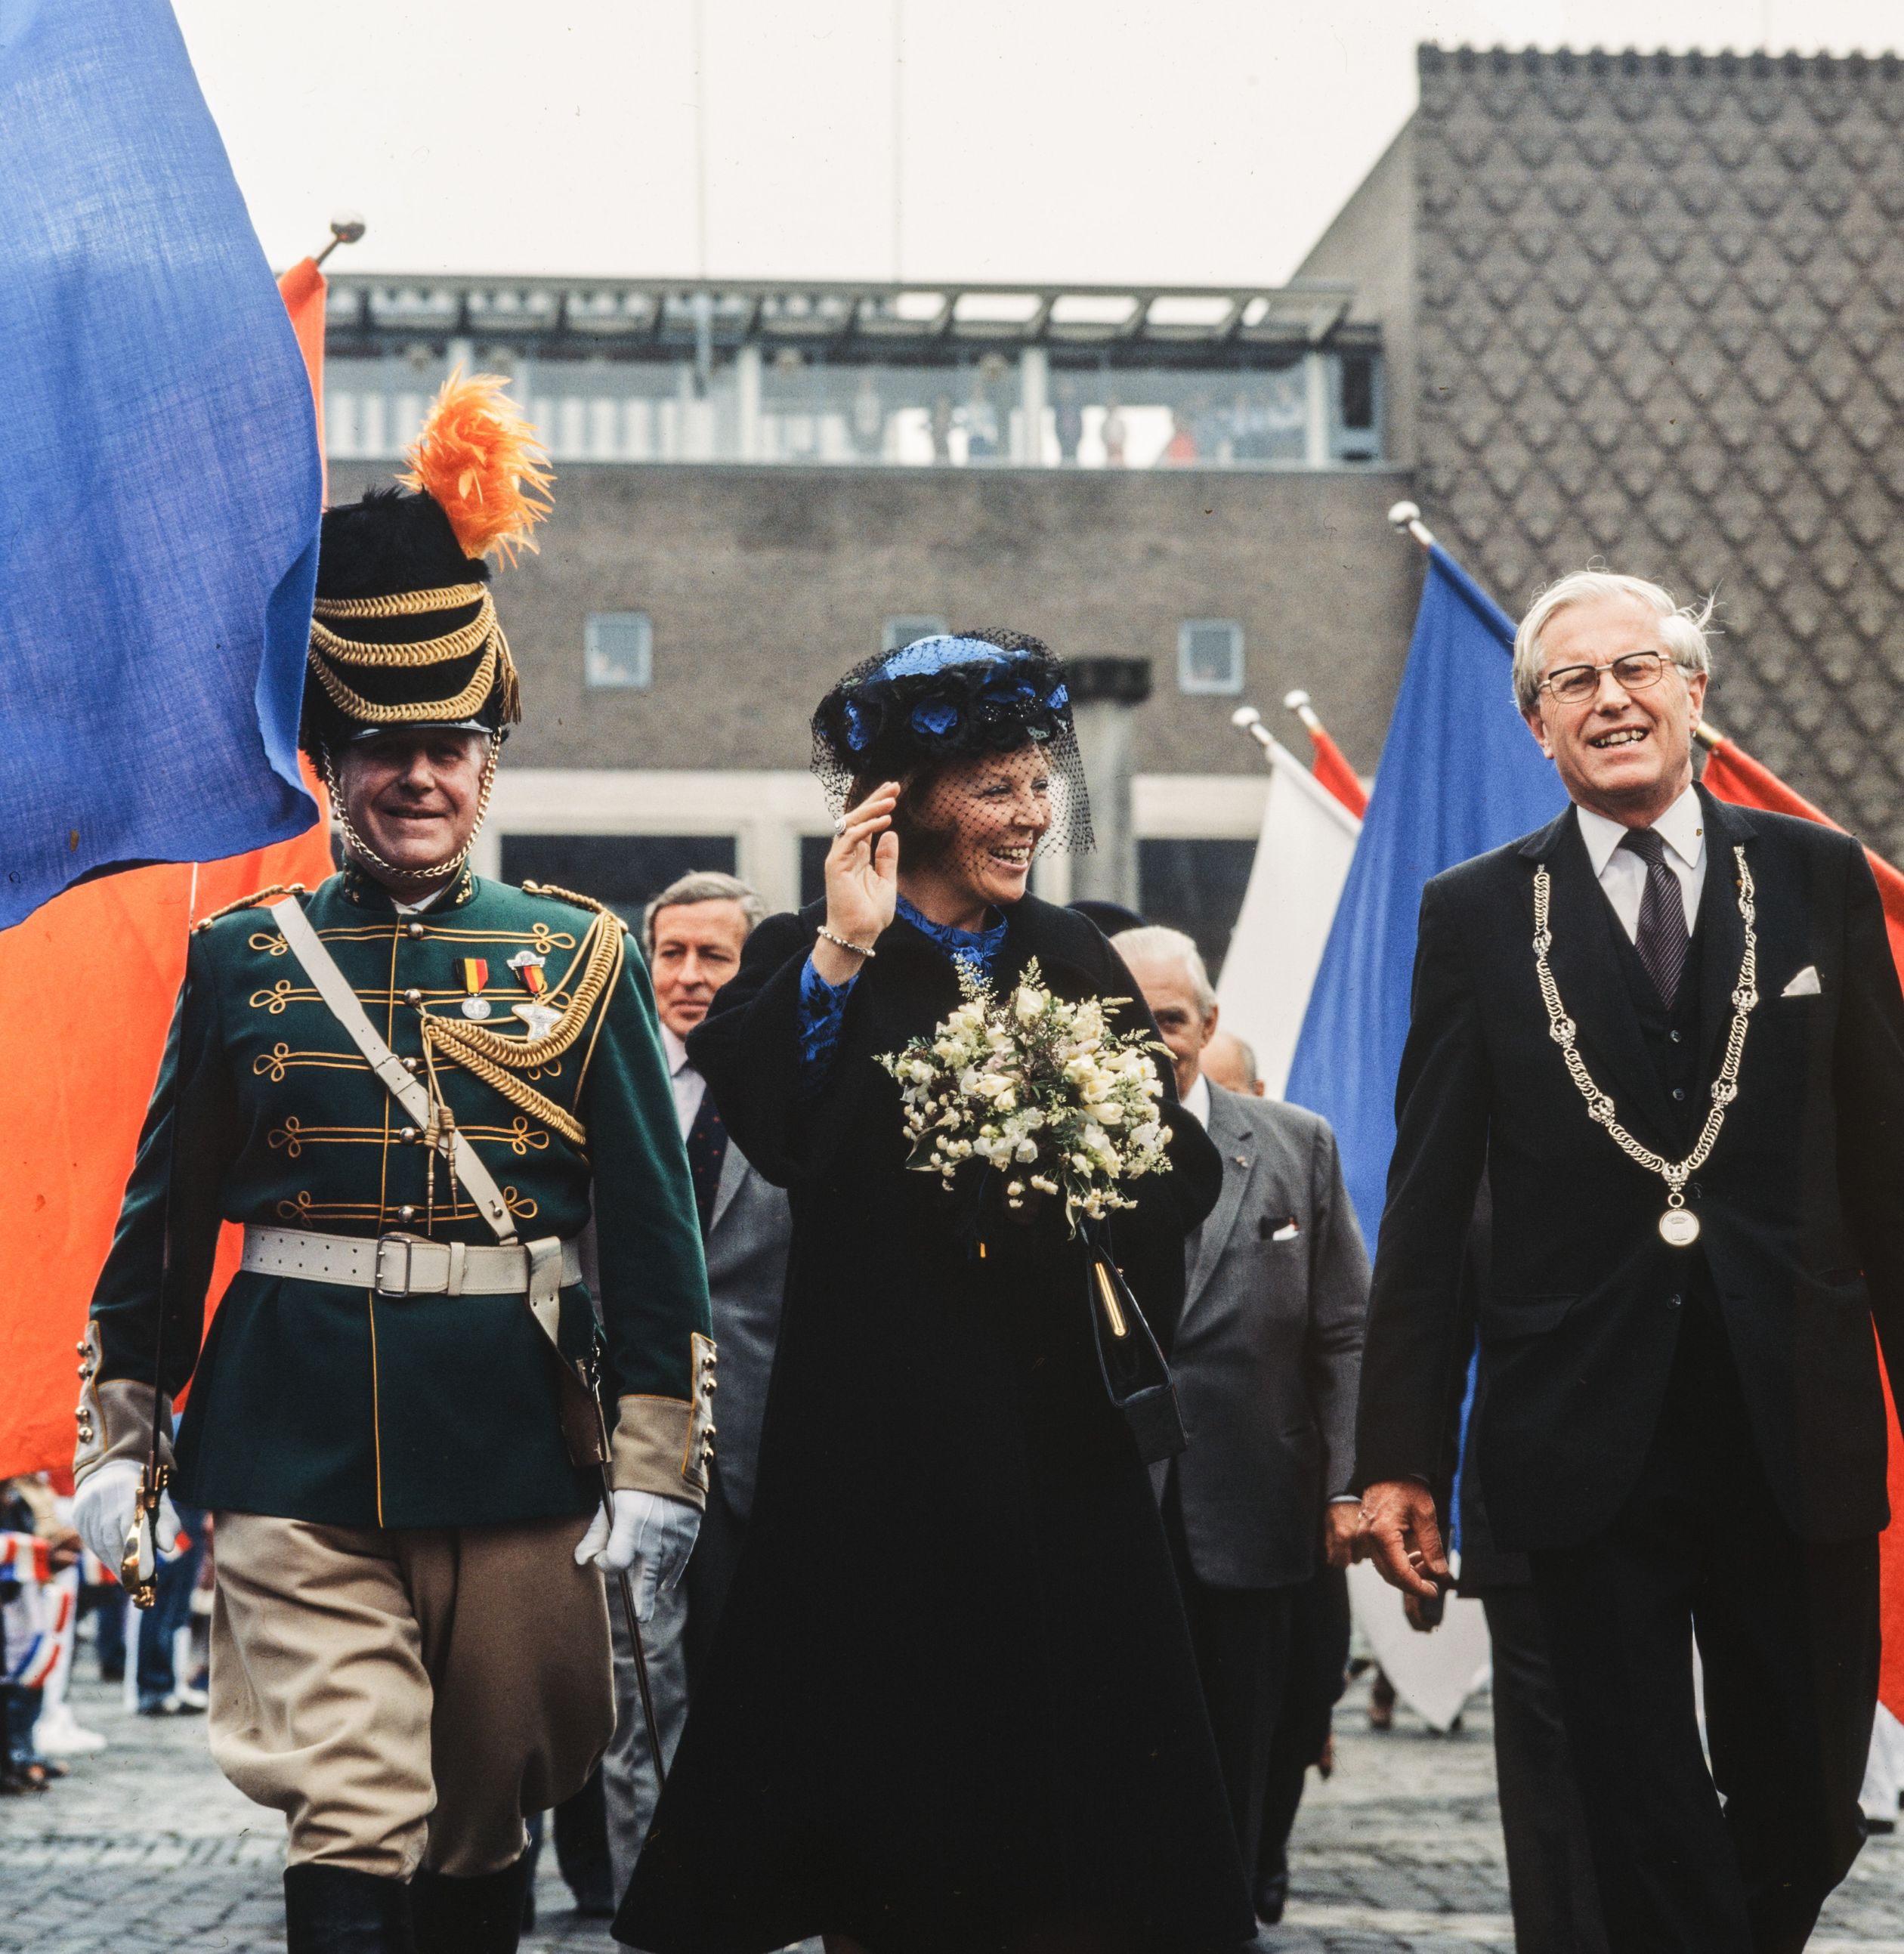 In Gelderland bezoekt koningin Beatrix de stad Arnhem.